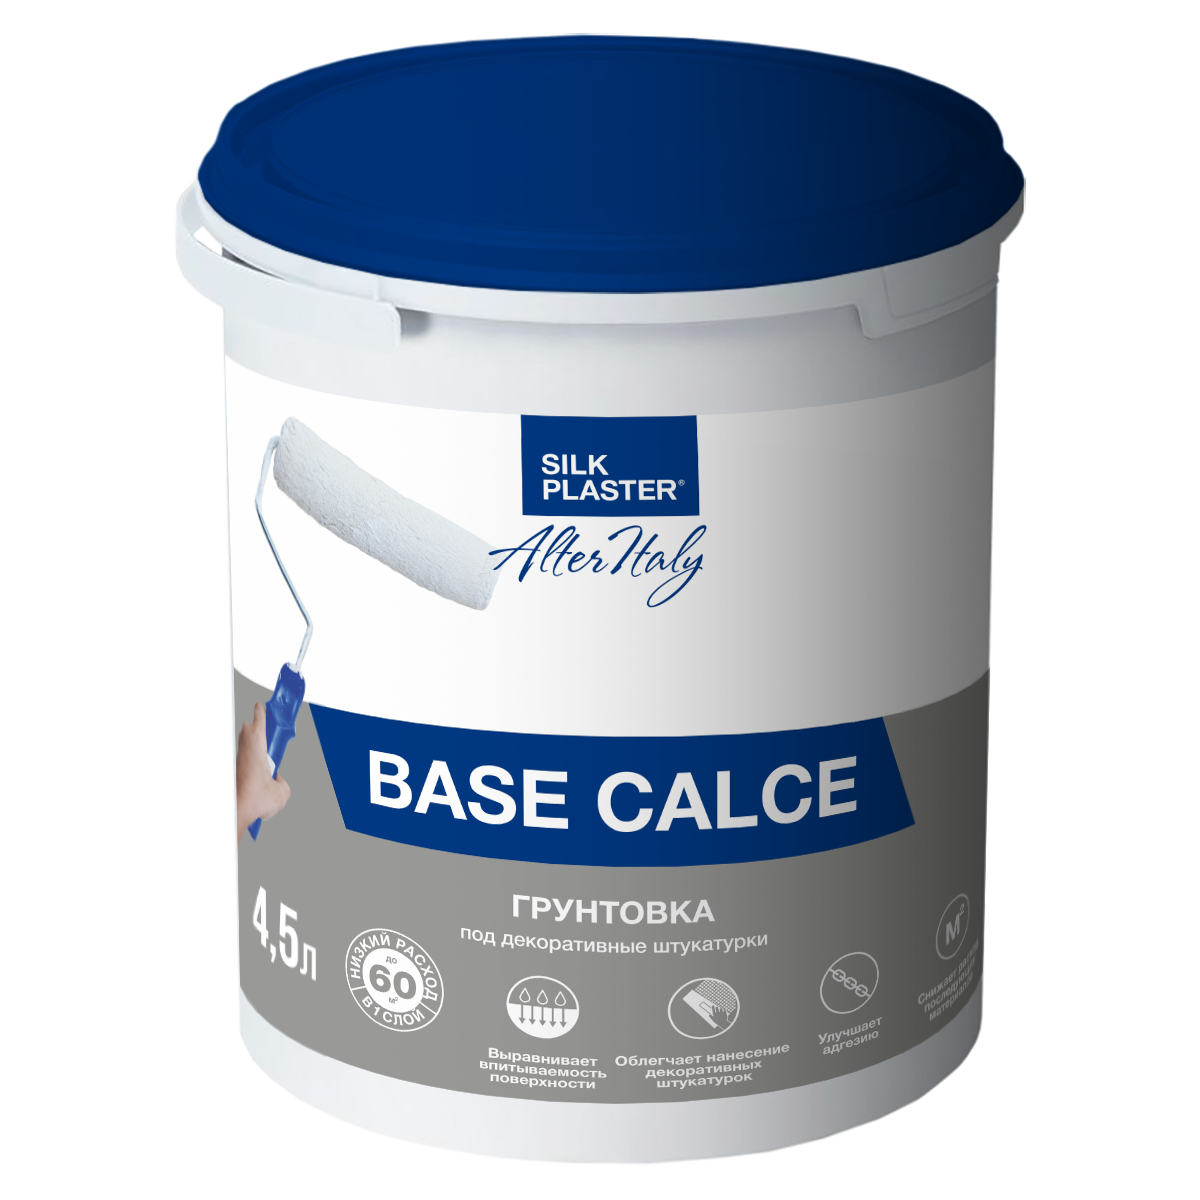 Инструкция по использованию грунтовки   AlterItaly Base Calce